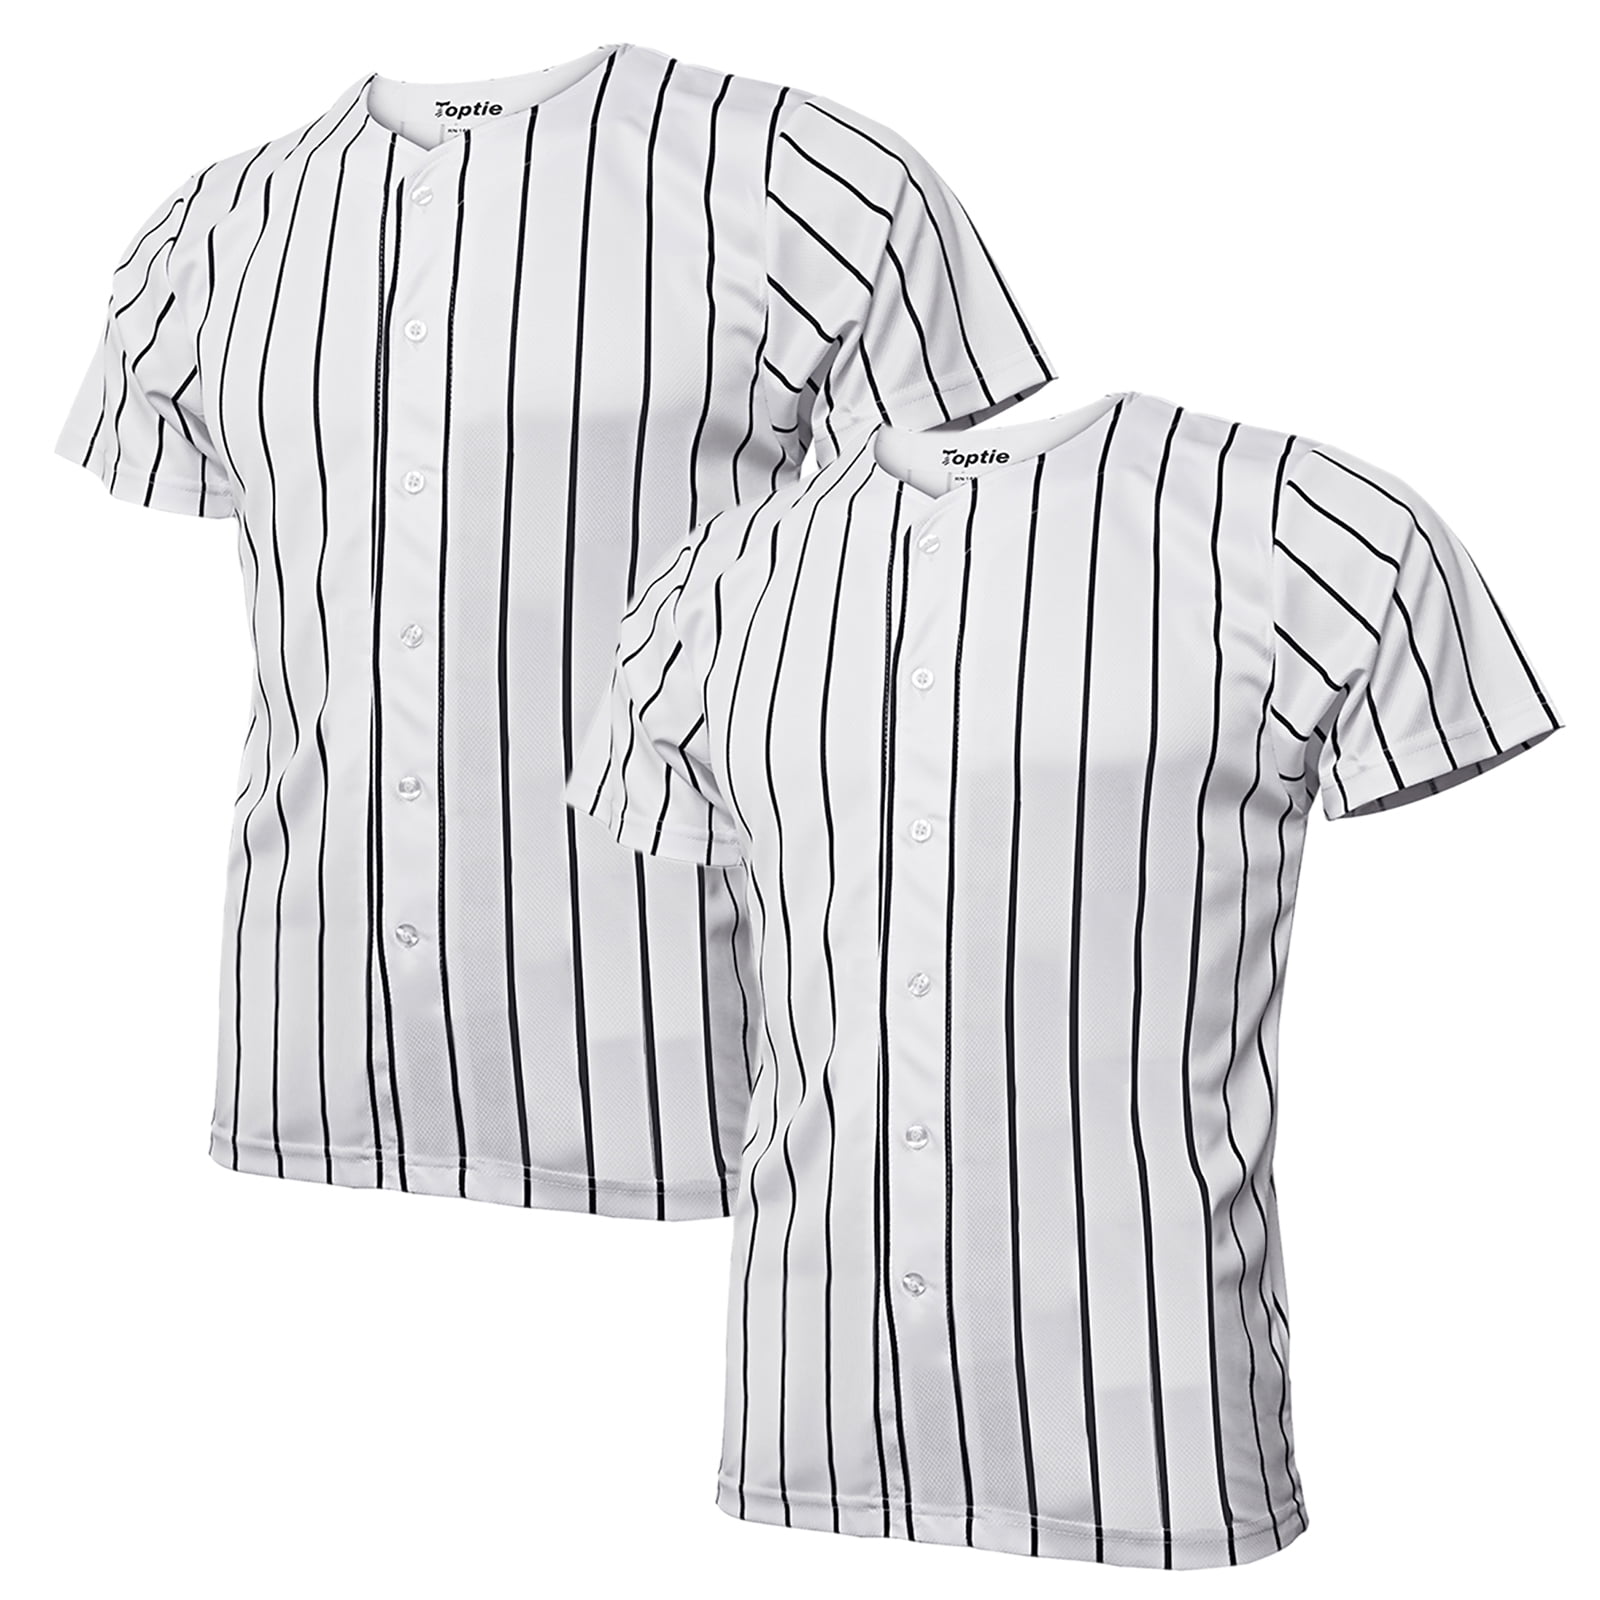 Toptie TOPTIE Women Baseball Jersey Hip Hop Hipster Button Down Baseball T  Shirt